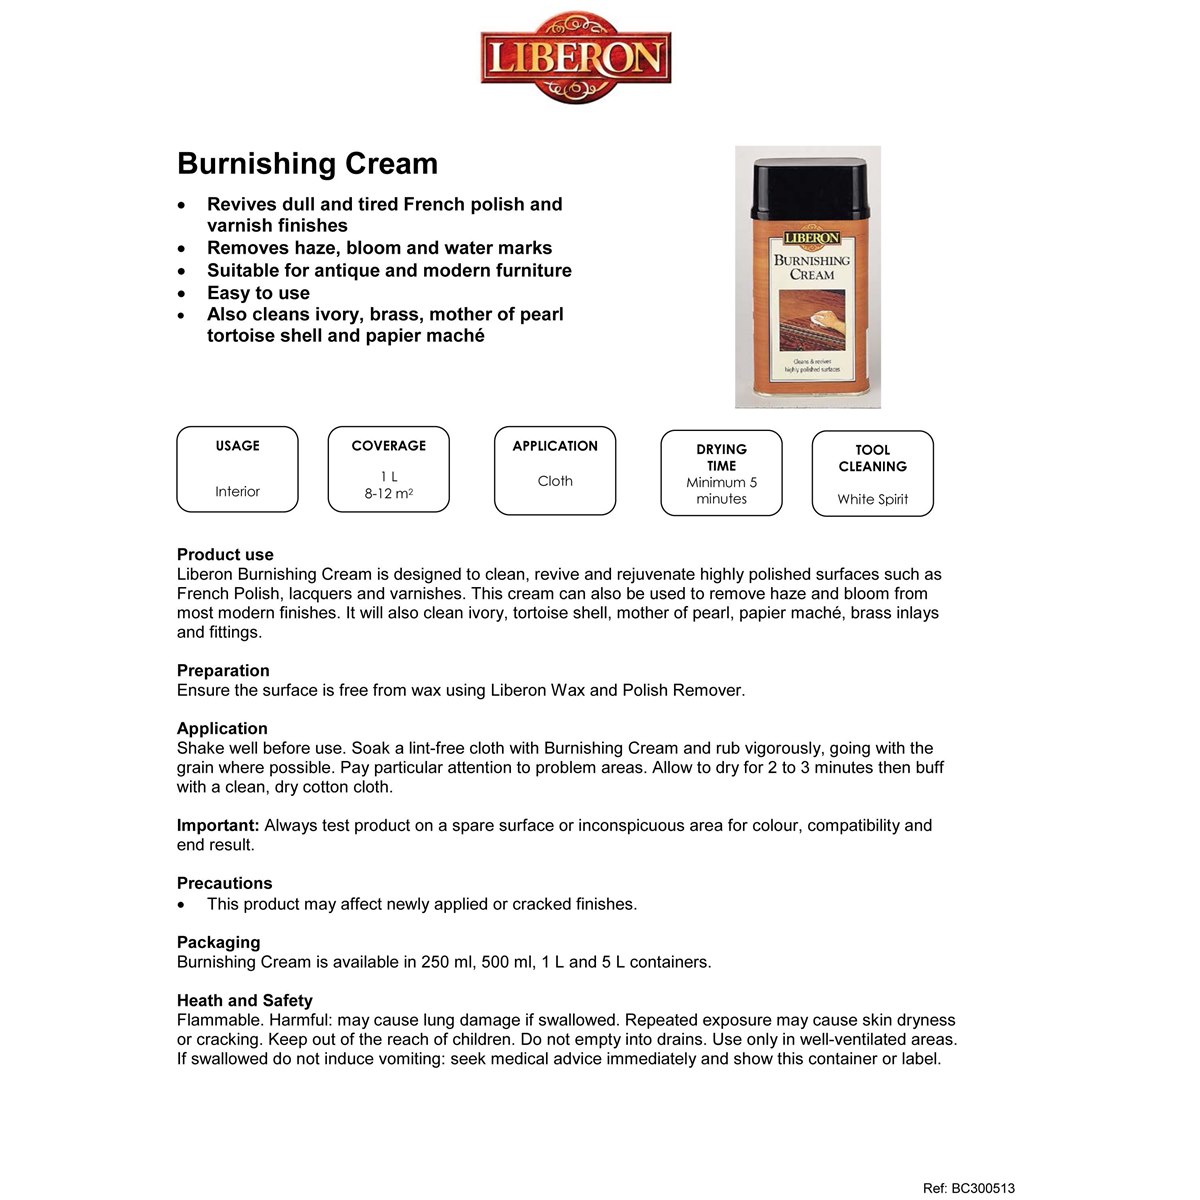 Liberon Burnishing Cream usage instructions